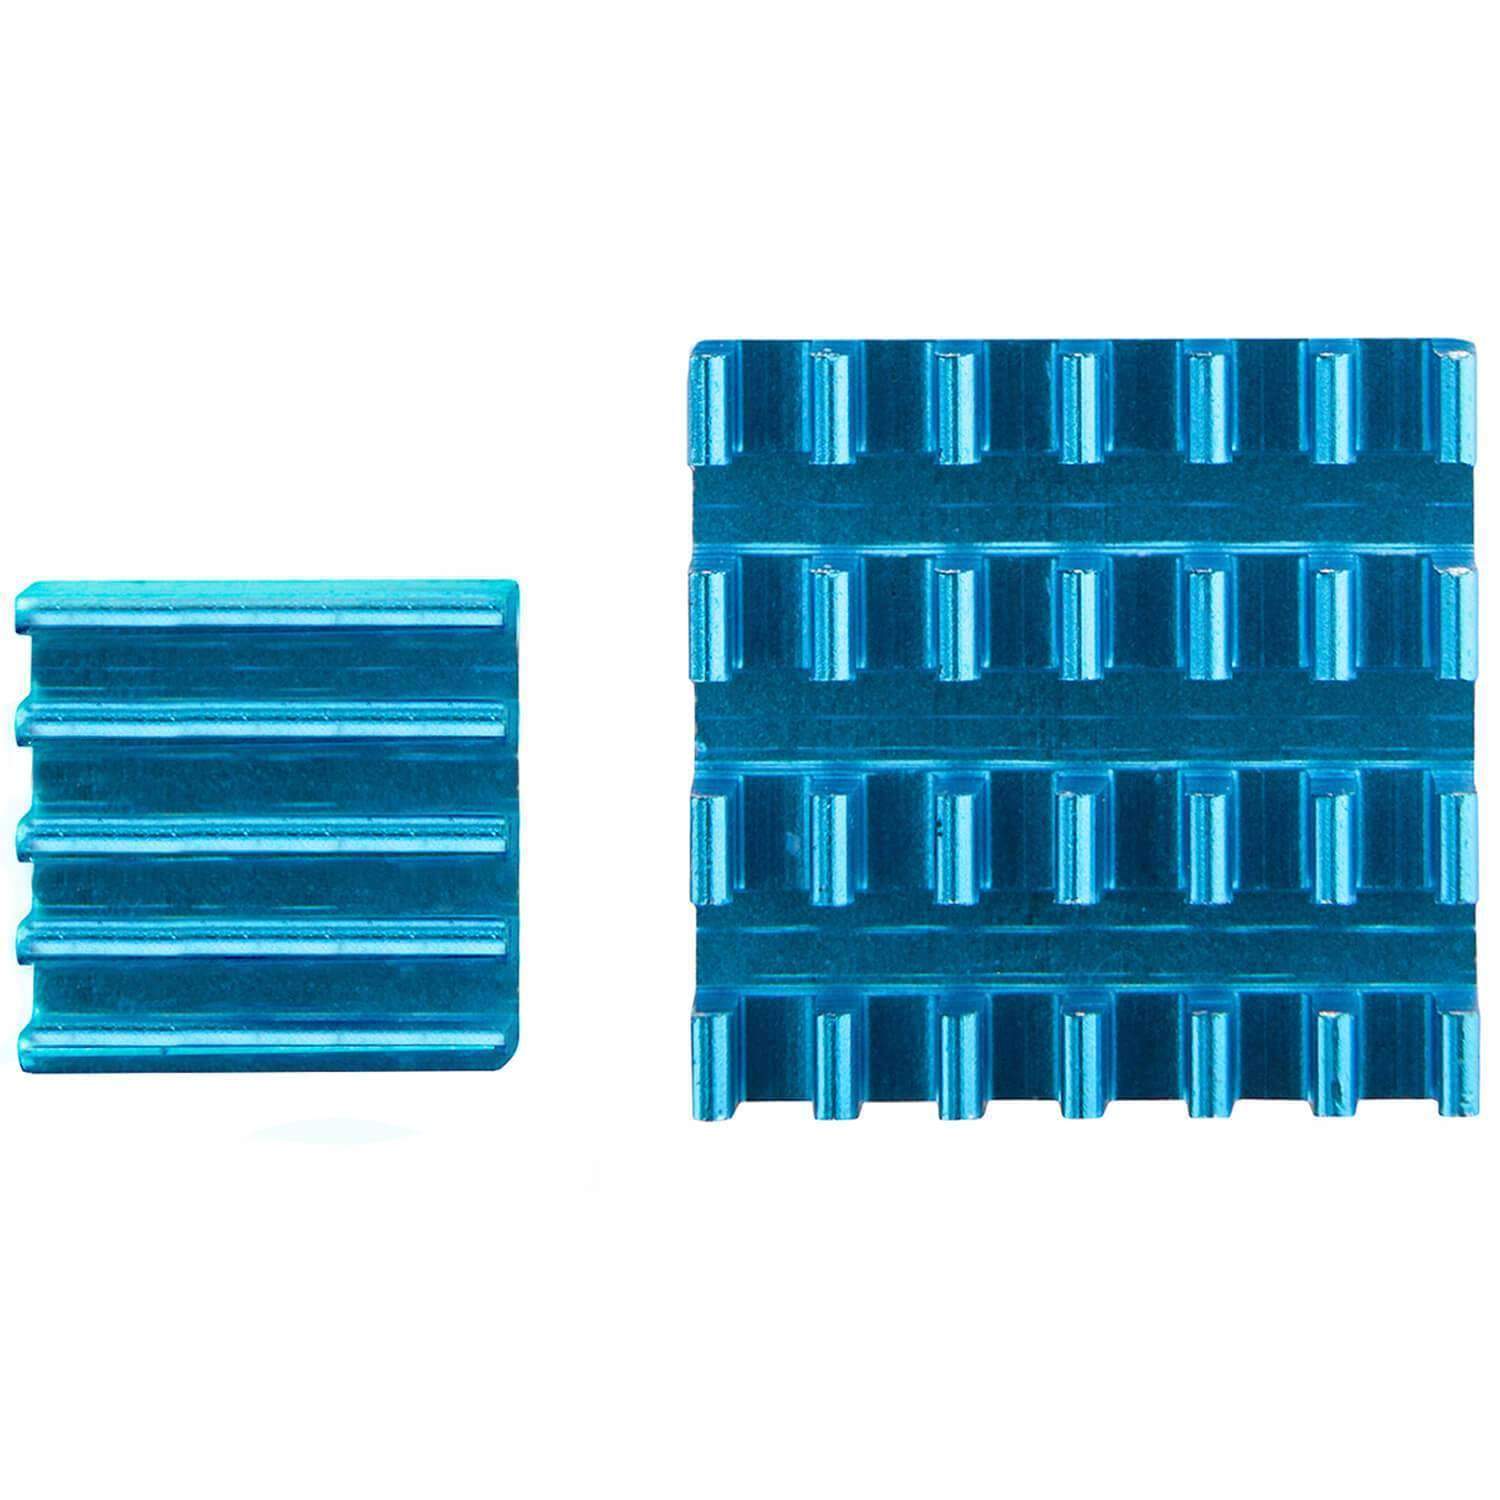 2er Set blaue Alu Kühlkörper passiv für Raspberry Pi 3 mit wärmeleitender Spezialklebefolie RaspberryPi Zubehör AZ-Delivery 